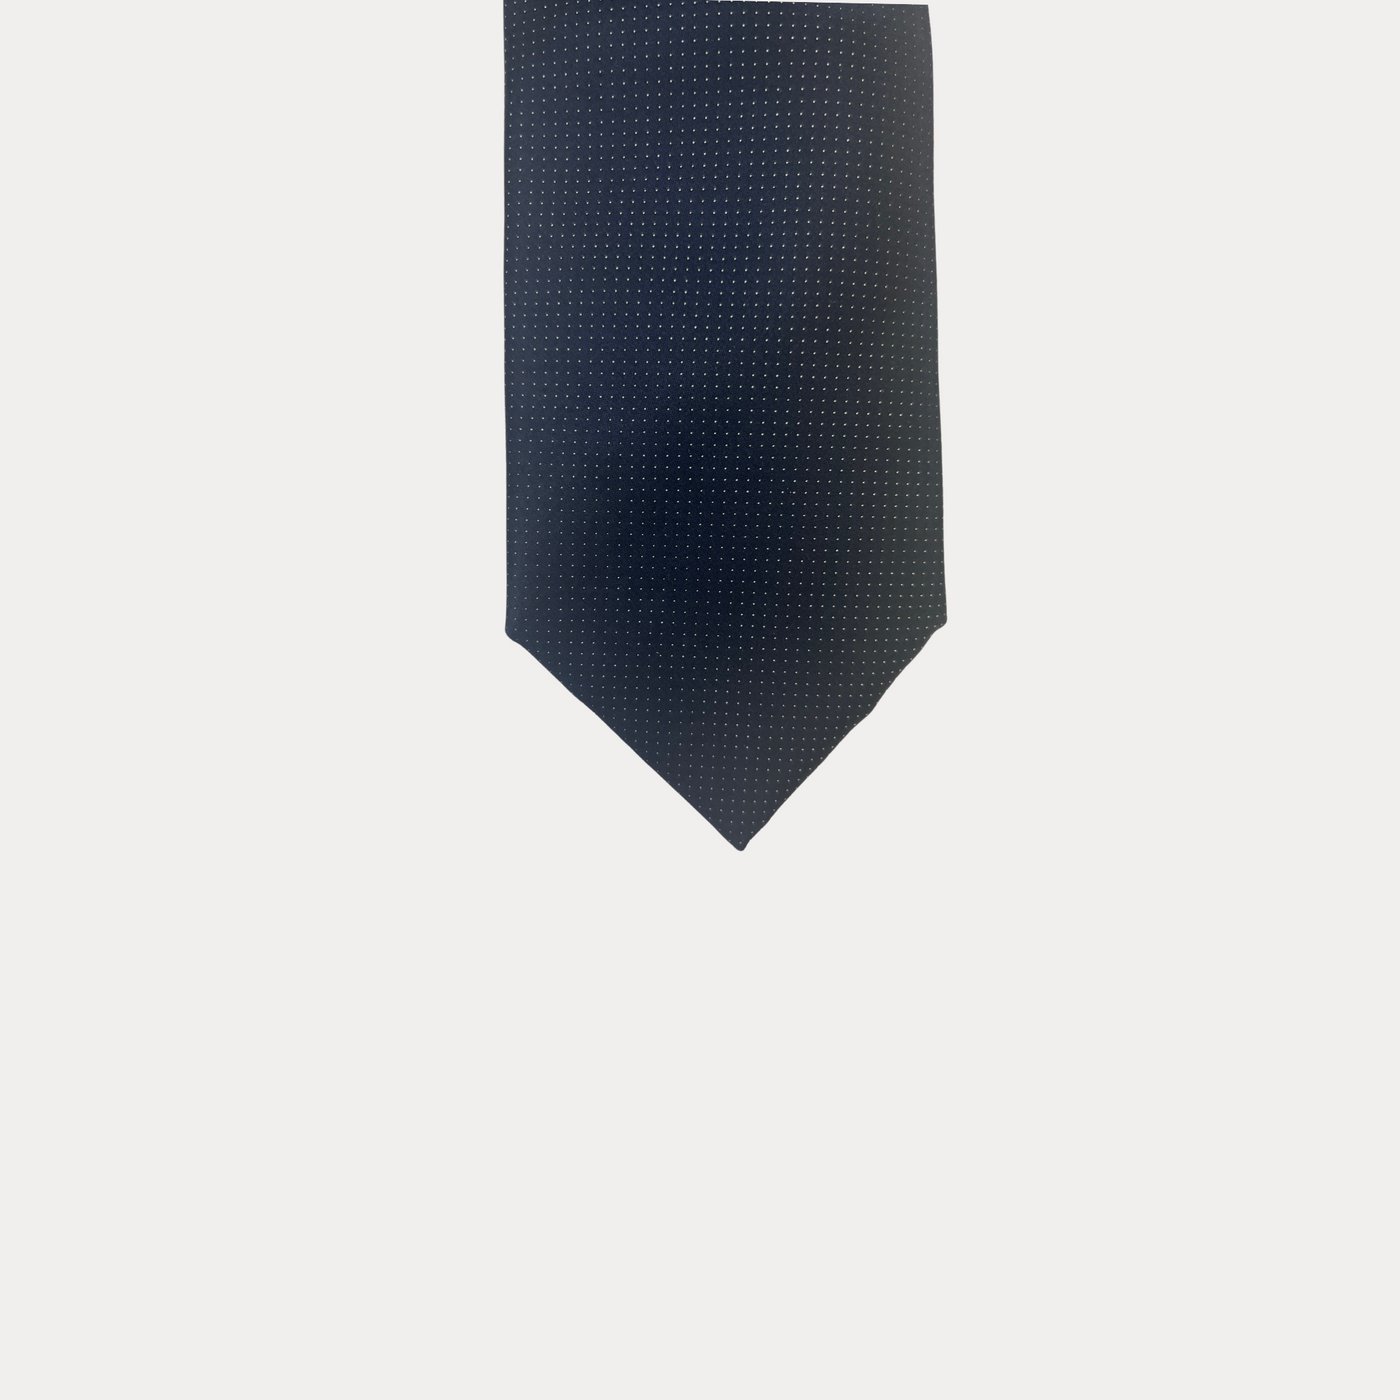 Dettaglio Frontale Cravatta Fabio Toma blu linea Silver